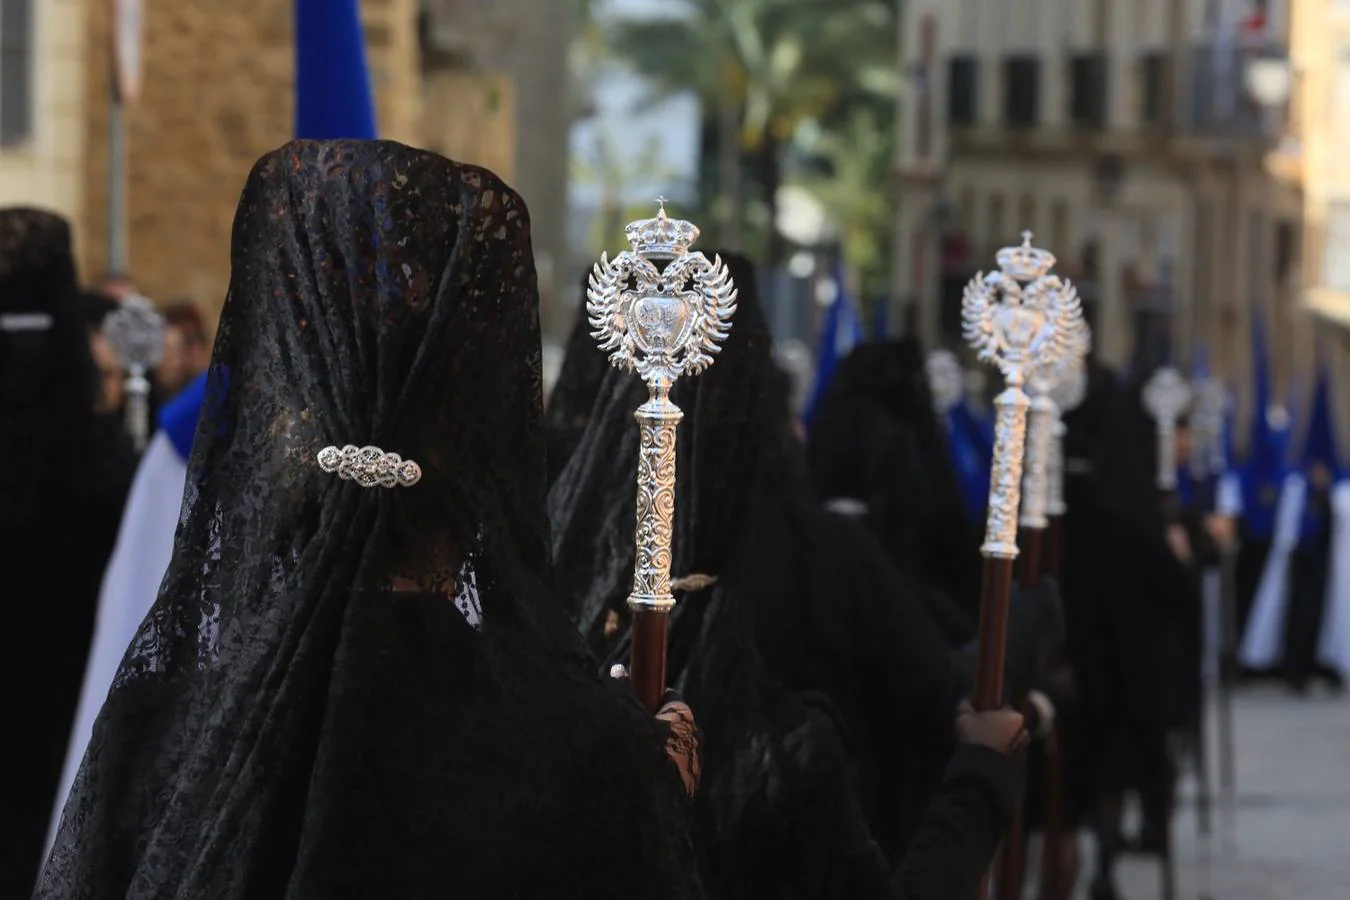 FOTOS: Expiración en la Semana Santa de Cádiz 2019